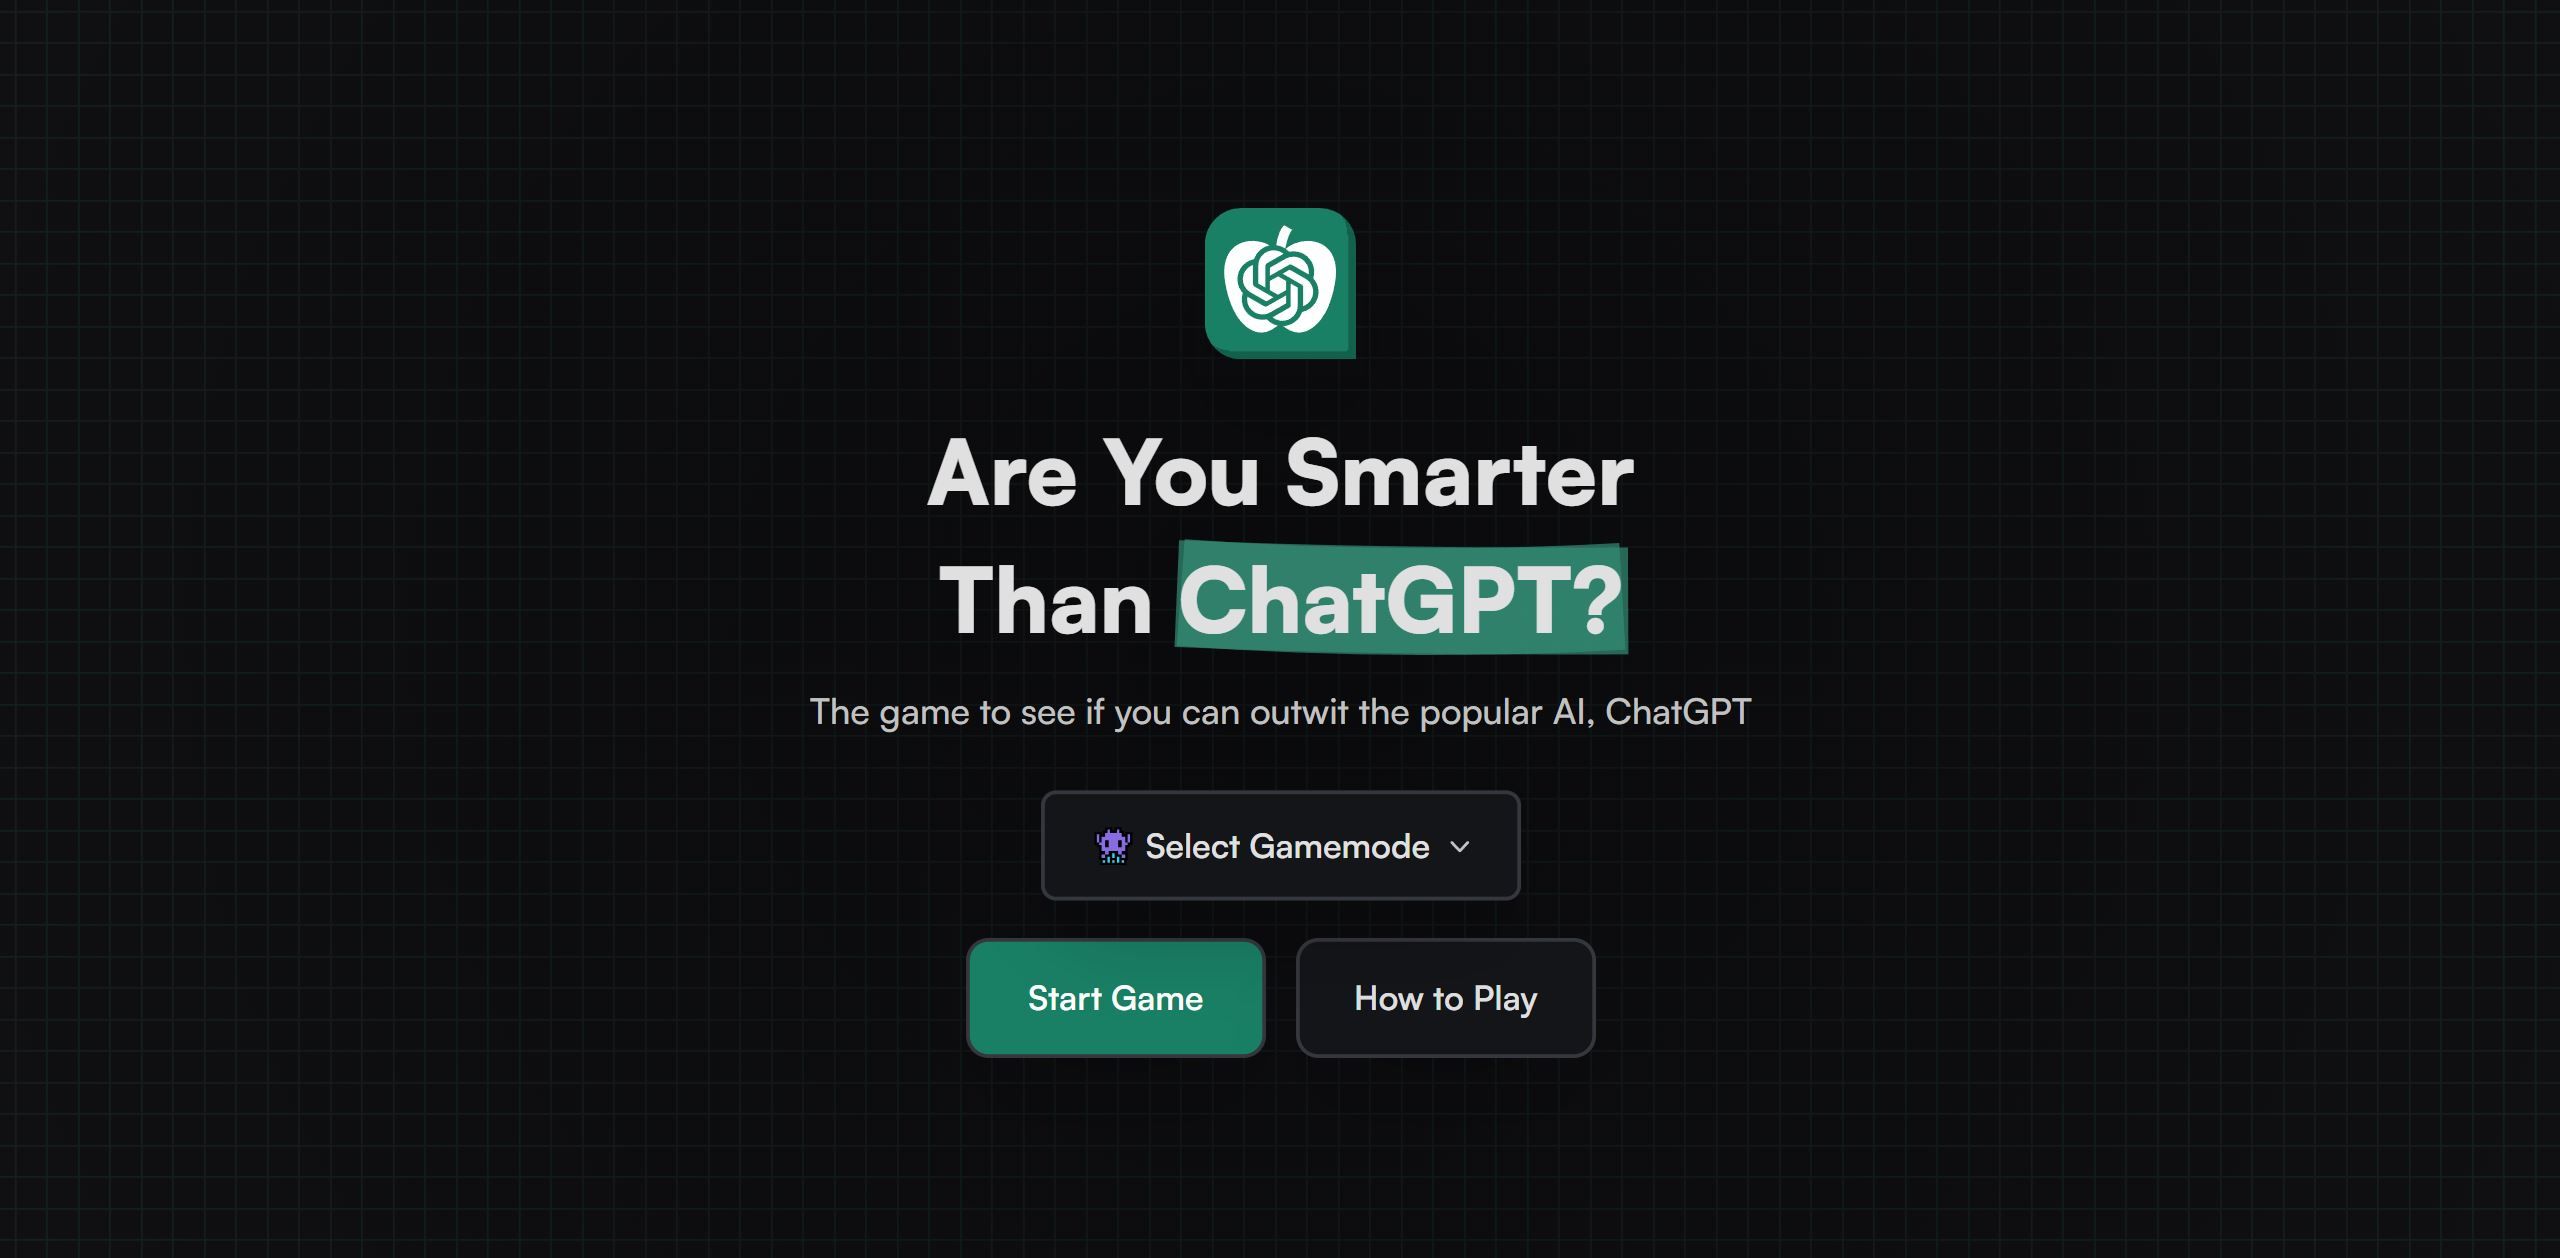 당신은 ChatGPT보다 똑똑합니까